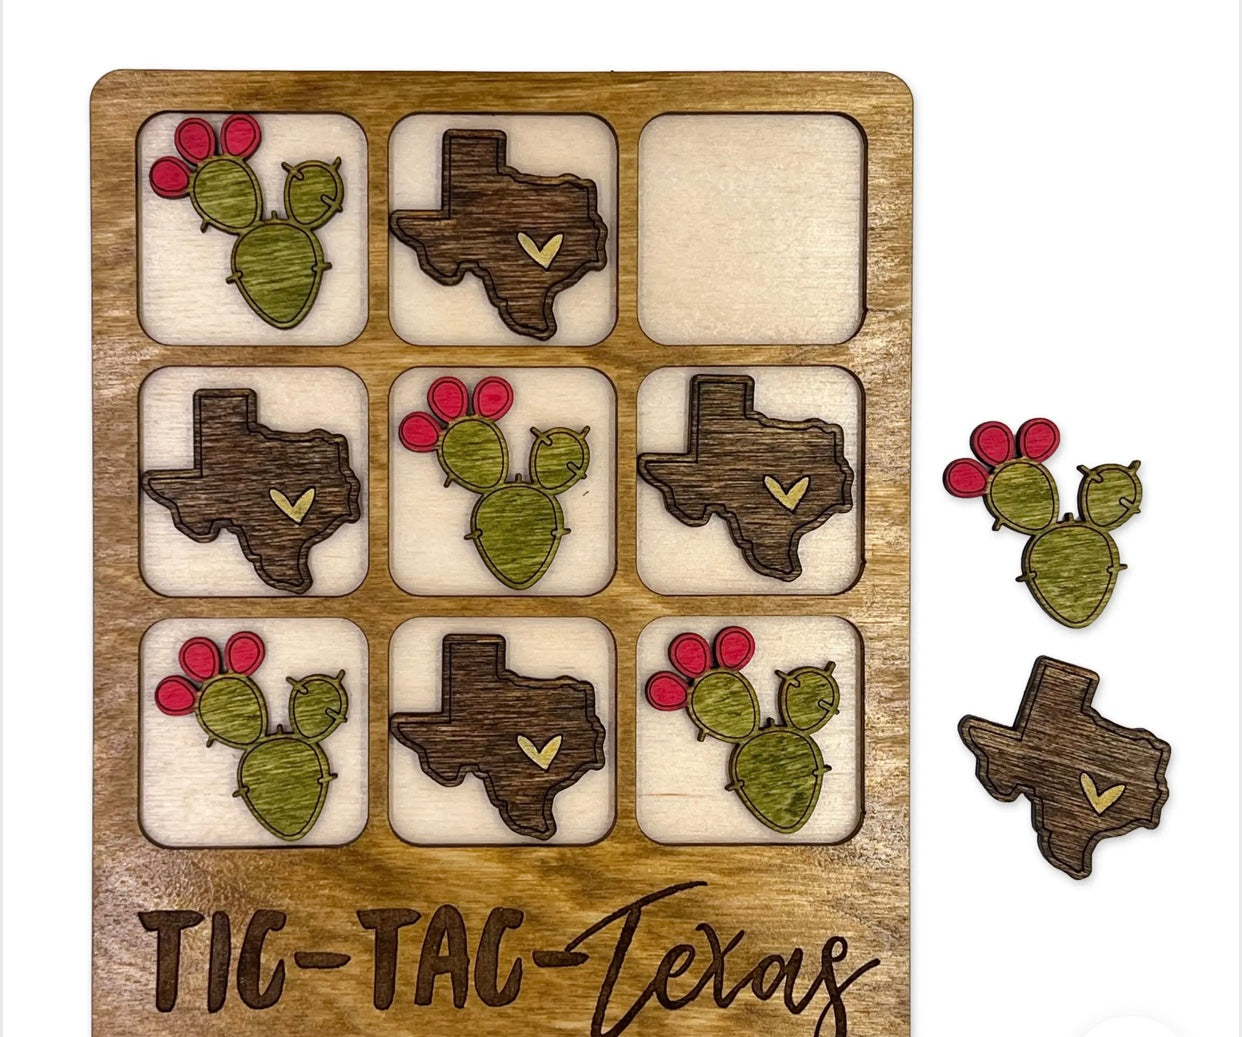 Tic-tac-Texas